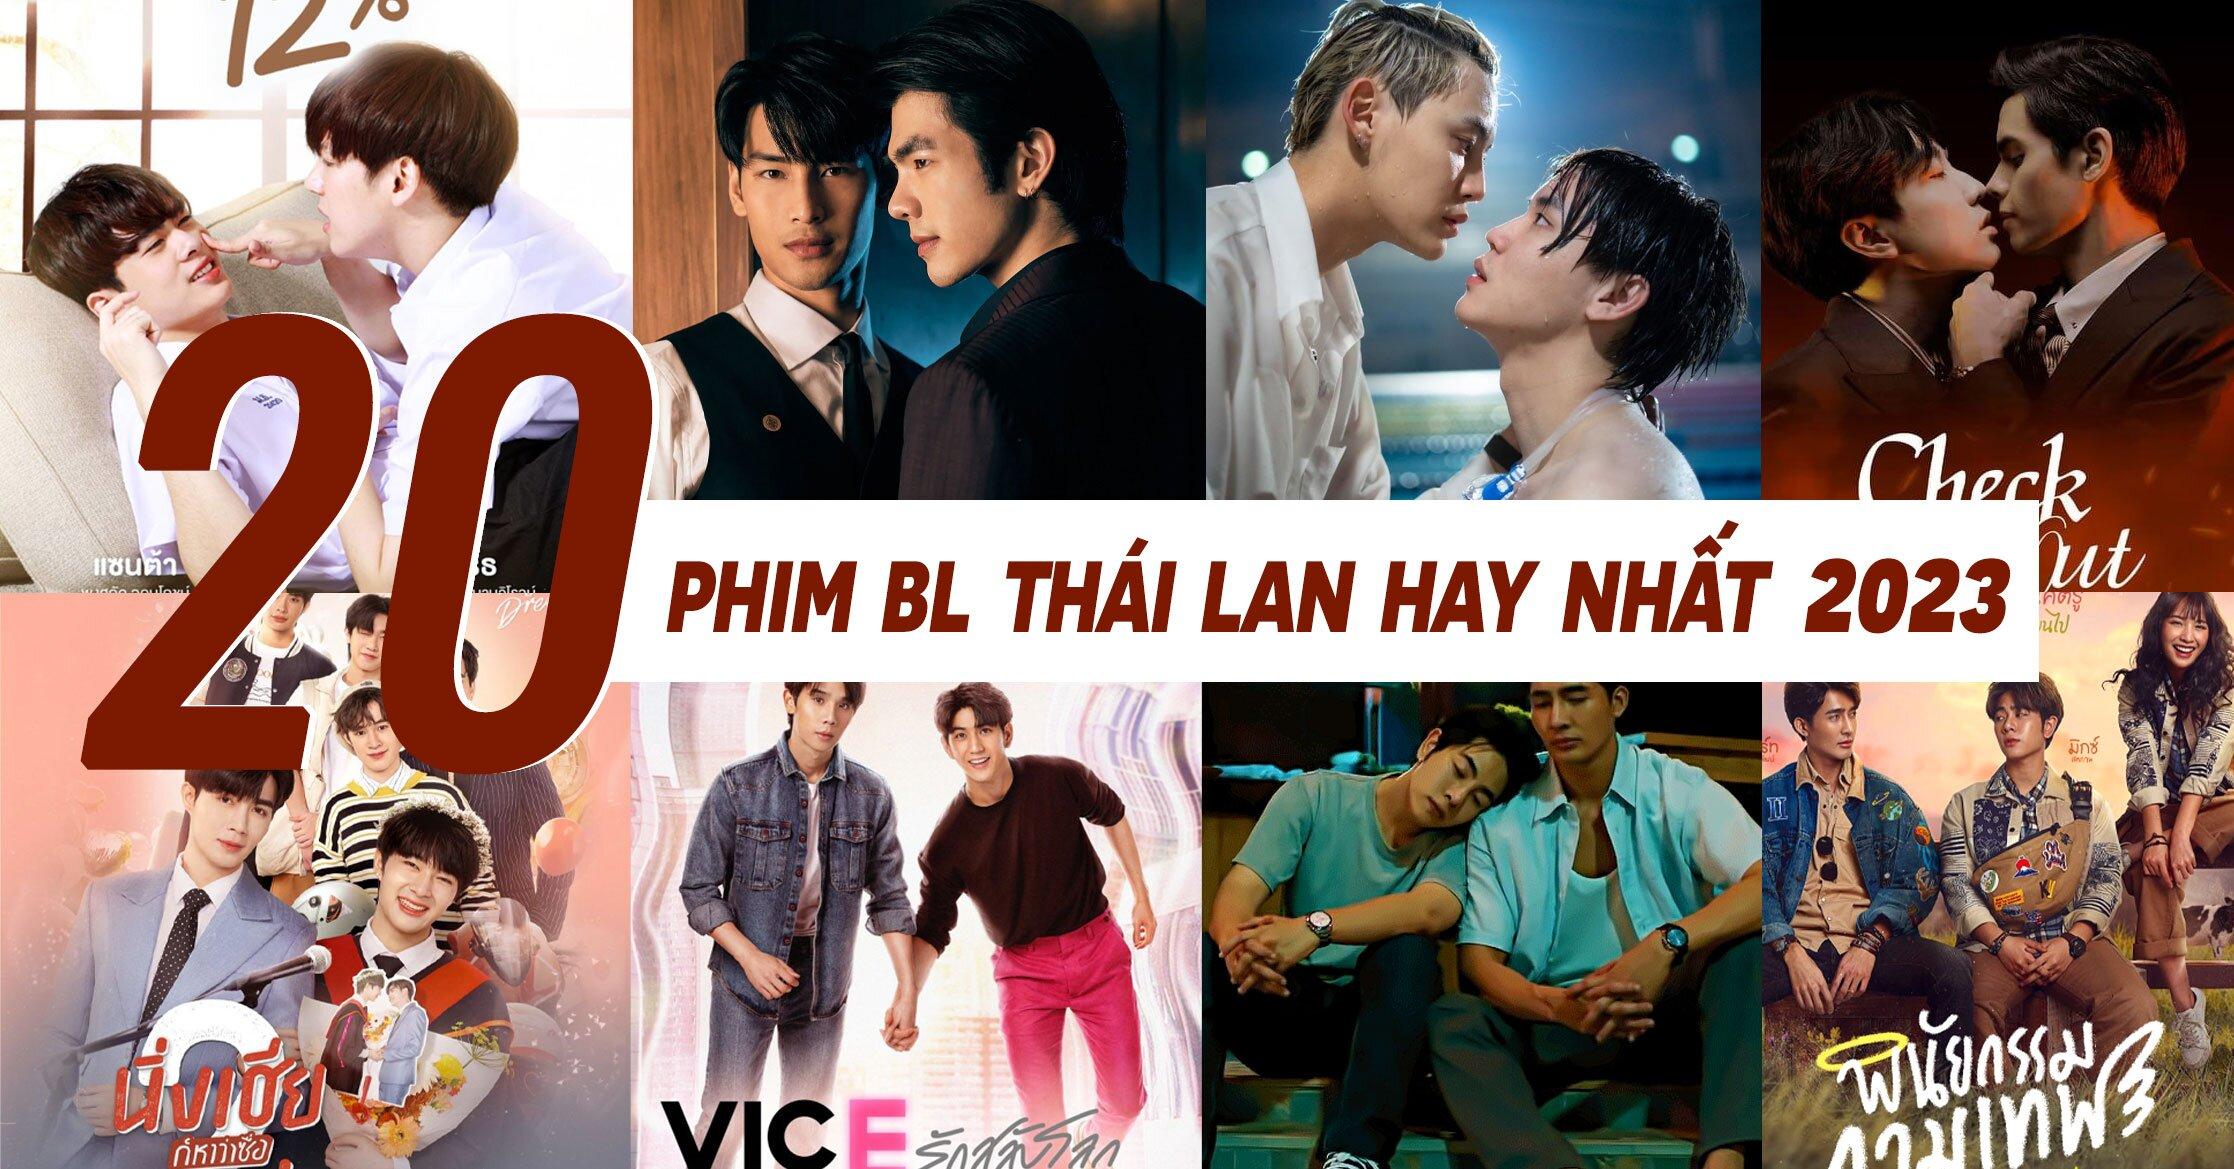 Phim Bl Thai Lan 2023 2 1 